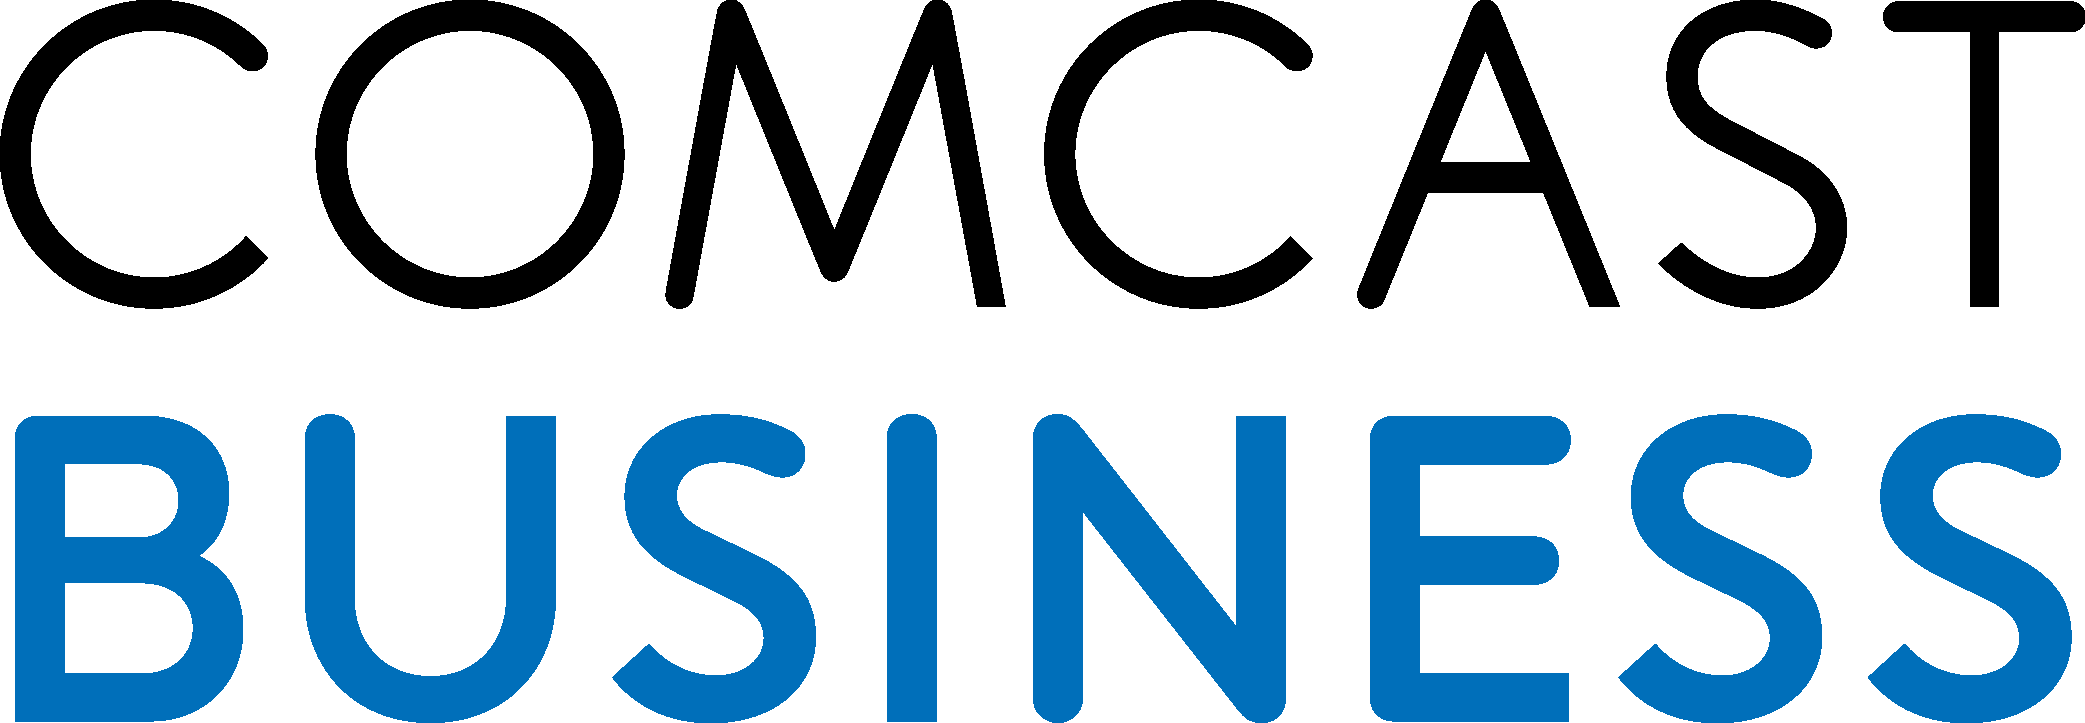 Comcast Business logo